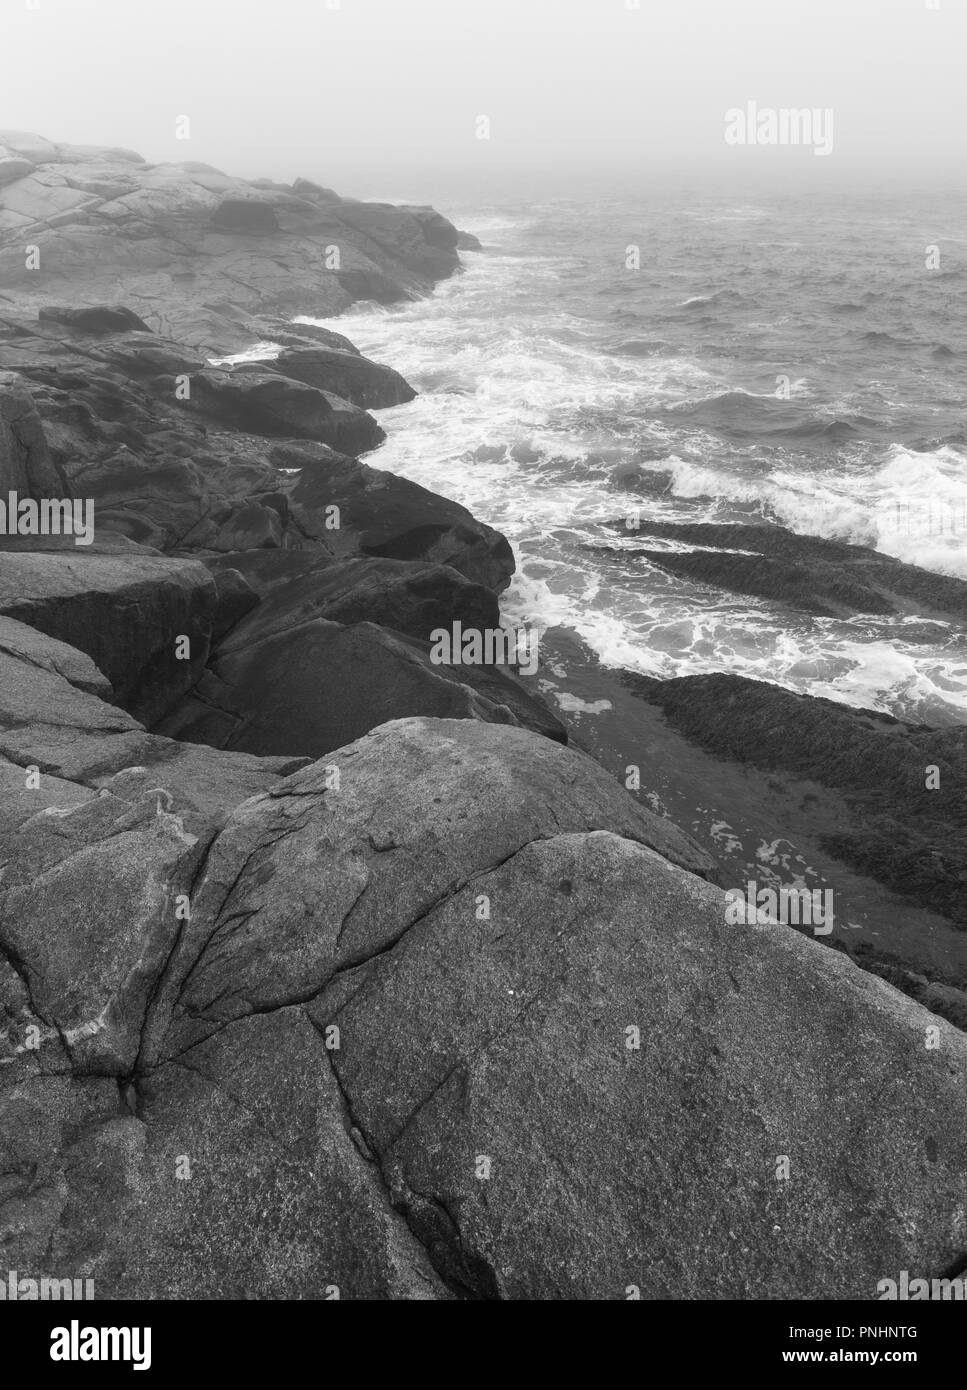 PEGGY'S Cove, Nova Scotia, Canadá - Rocky costa atlántica. Foto de stock